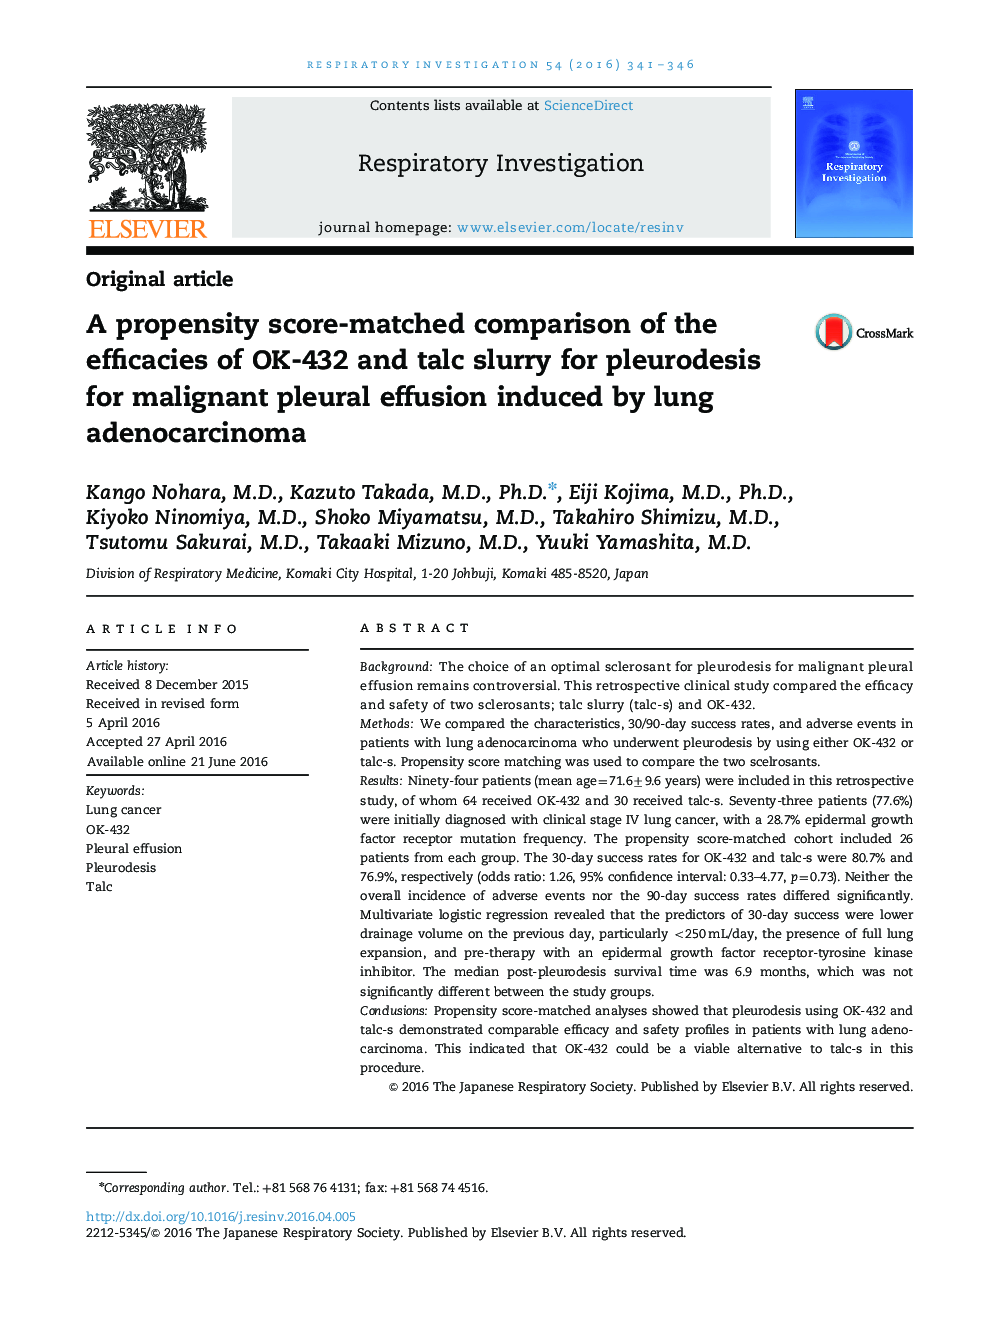 مقایسۀ تساوی سازگاری نمرات اثربخشی های OK-432 و دوغاب تالک برای پلورودز برای افيوژن پلورال بدخيم ناشی از آدنوکارسينوم ريه